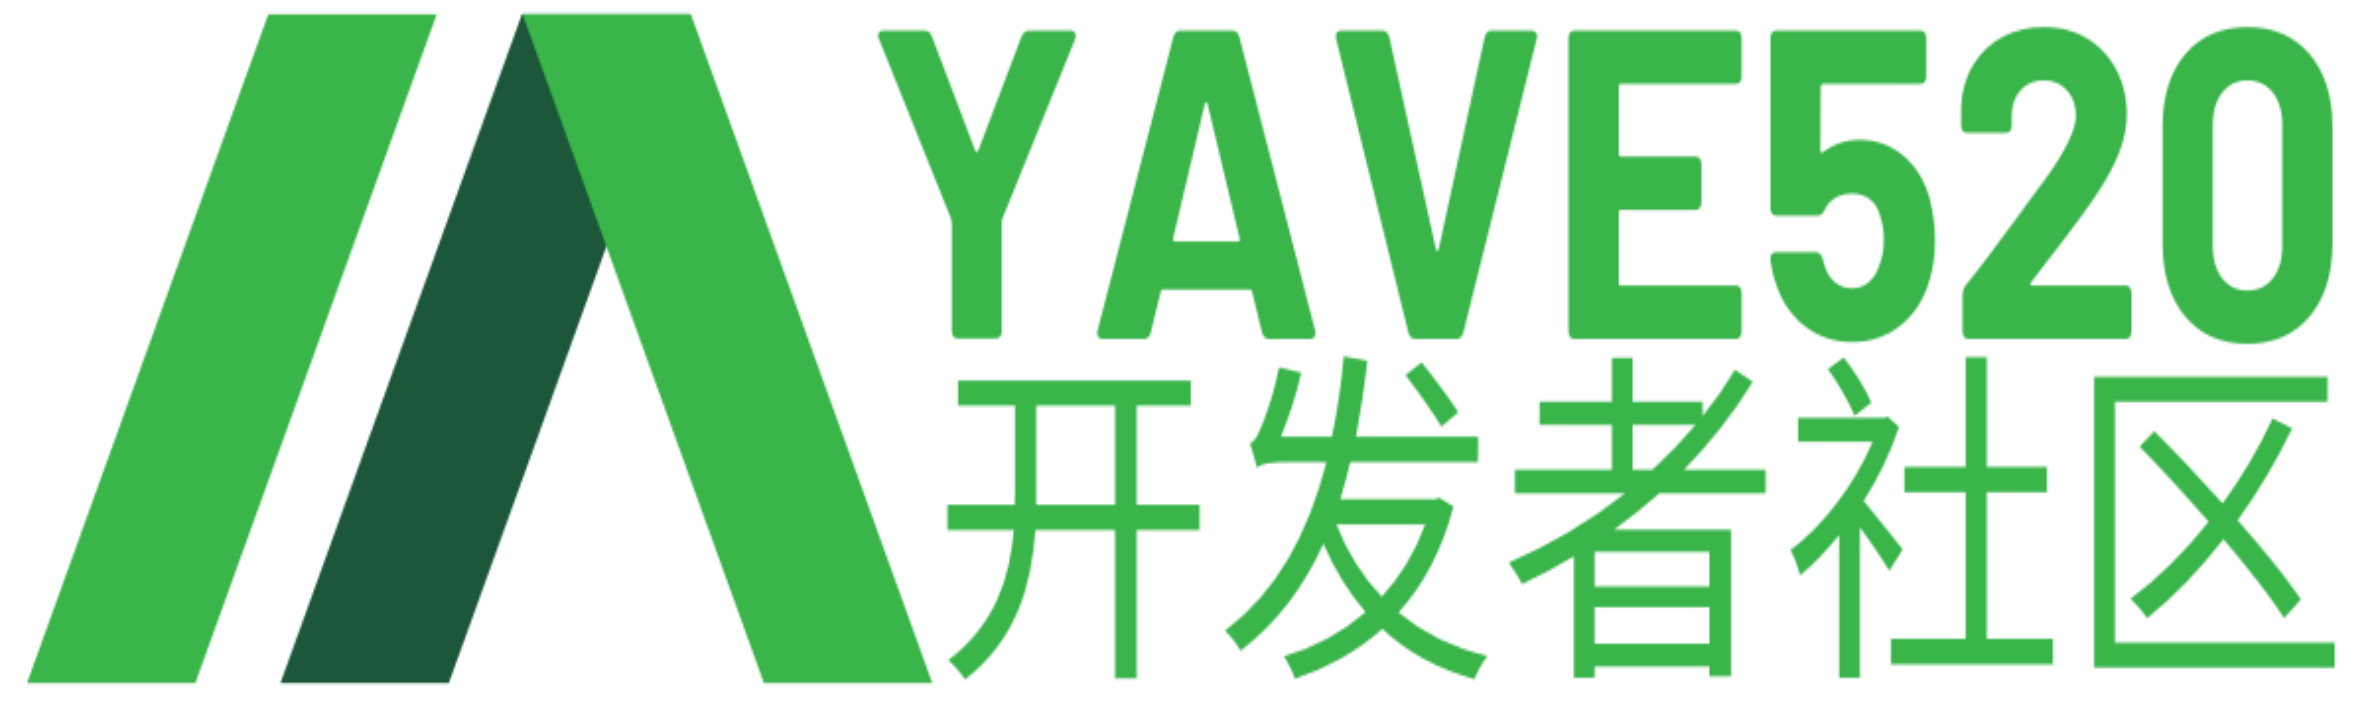 CSS网页底部样式布局-Yave520-专业开发者社区